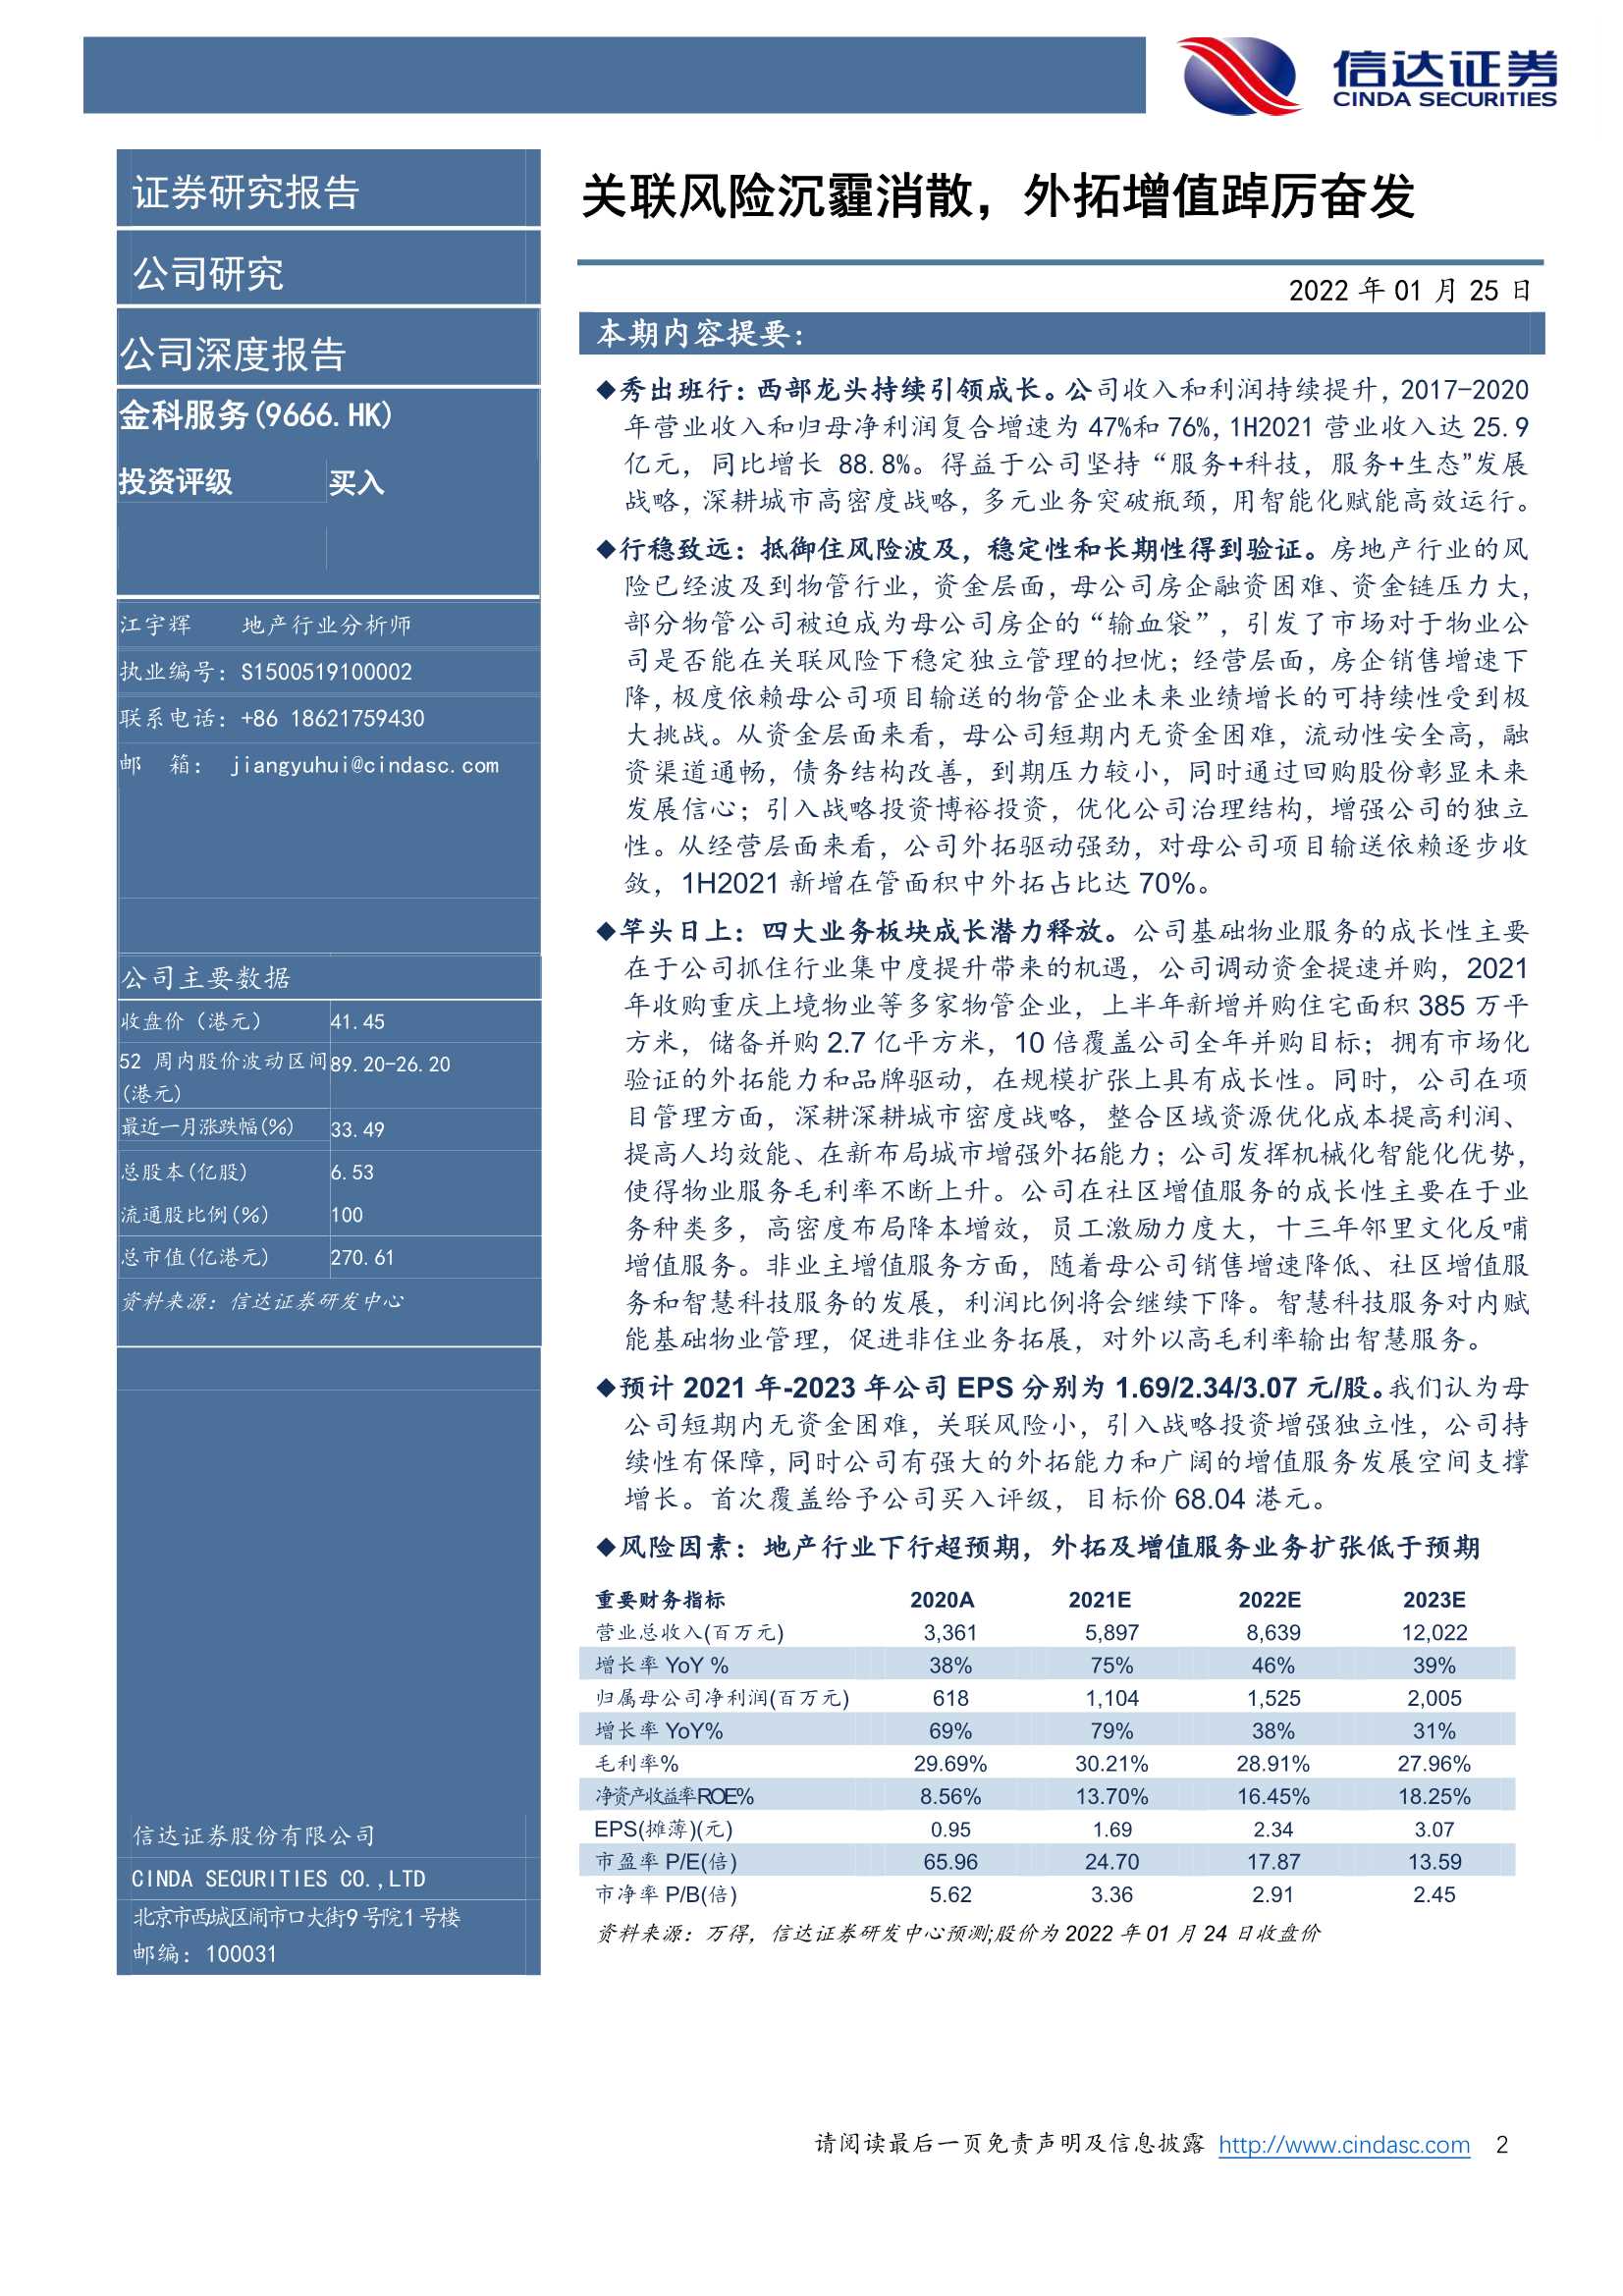 信达证券-金科服务-9666.HK-公司深度报告：关联风险沉霾消散，外拓增值踔厉奋发-20220125-28页